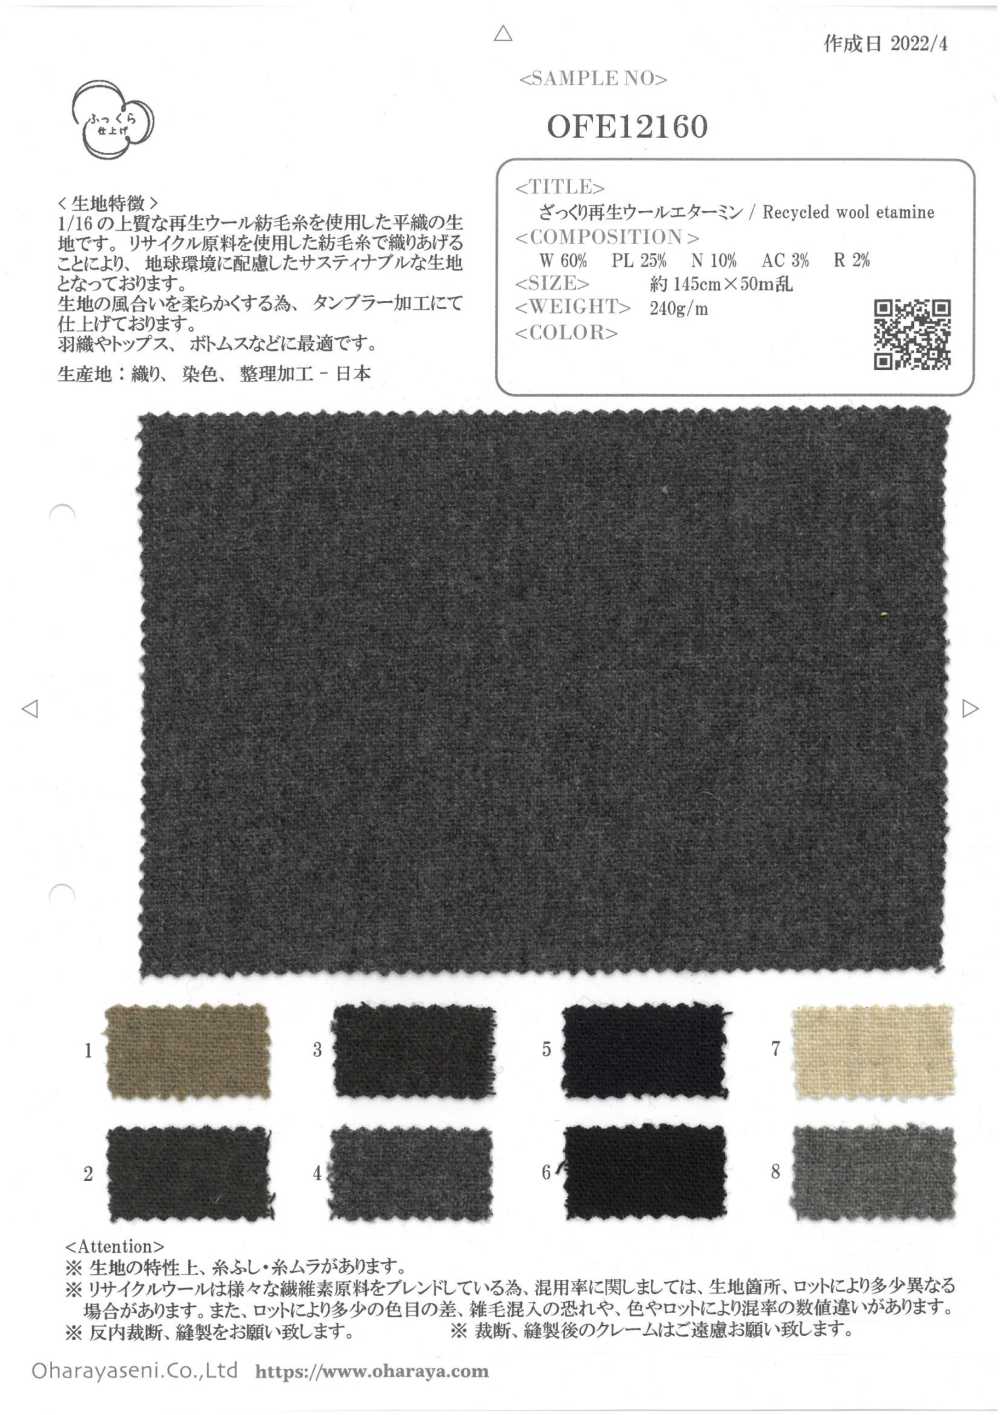 OFE12160 Roughly Recycled Wool Etamine[Textile / Fabric] Oharayaseni